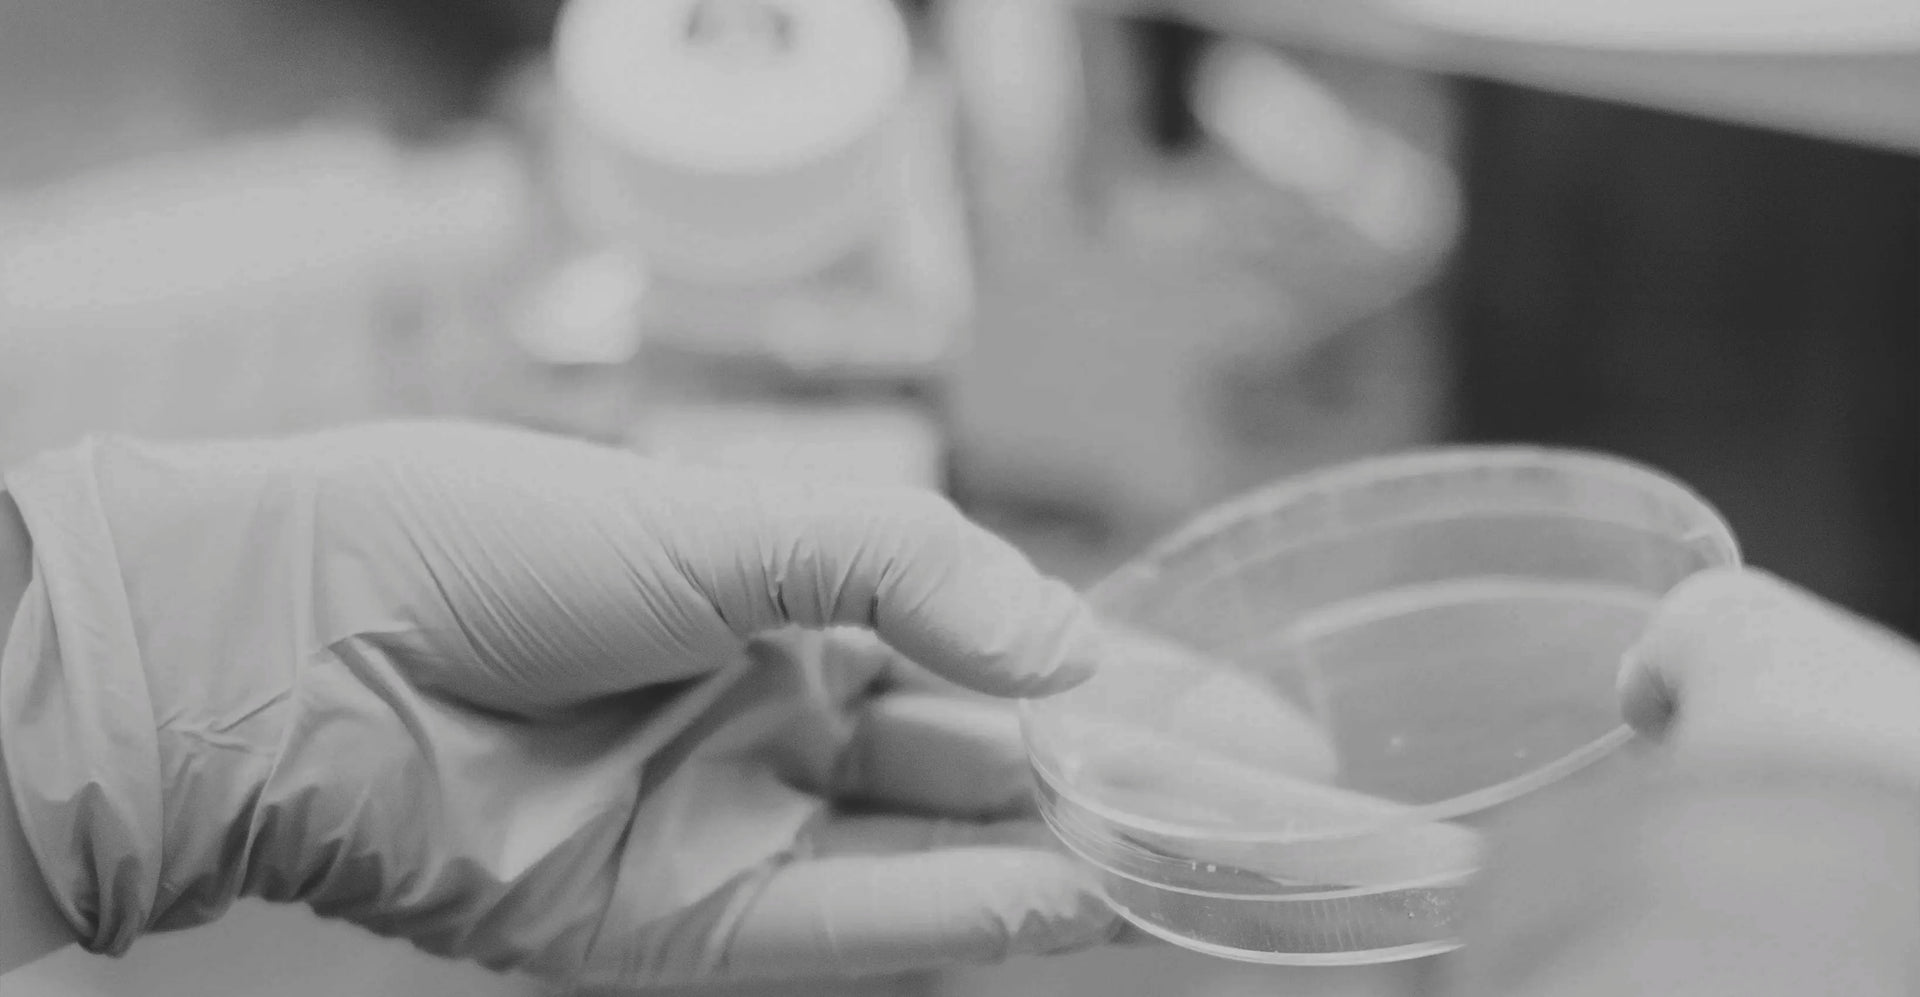 Man sieht eine Hand mit  Latexhandschuh, die eine Petrischale aus Glas hält. Das Bild ist in schwarz-weiß.